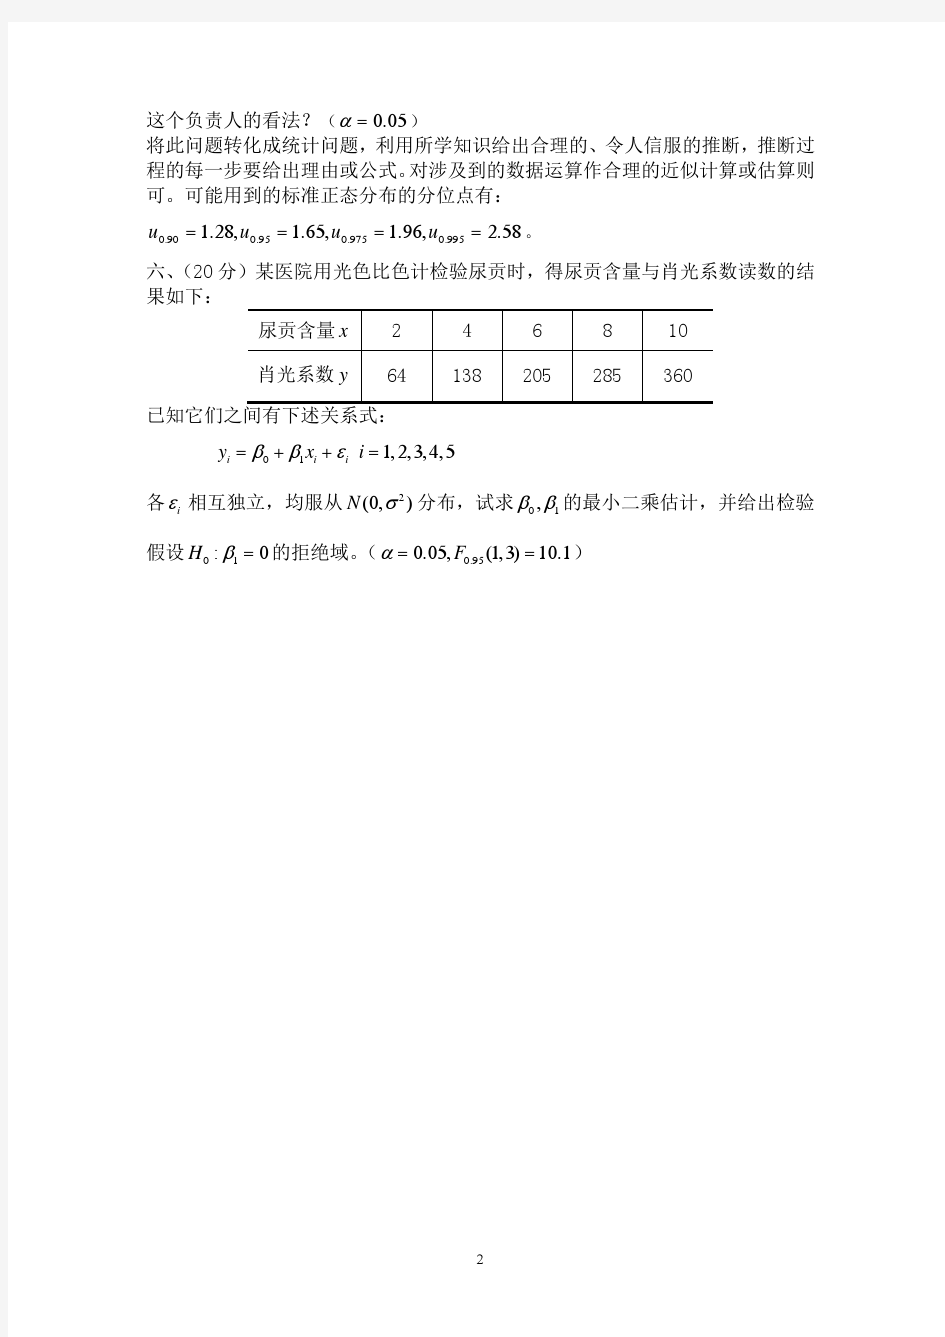 中国农业大学研究生《应用数理统计》期末考试-2014